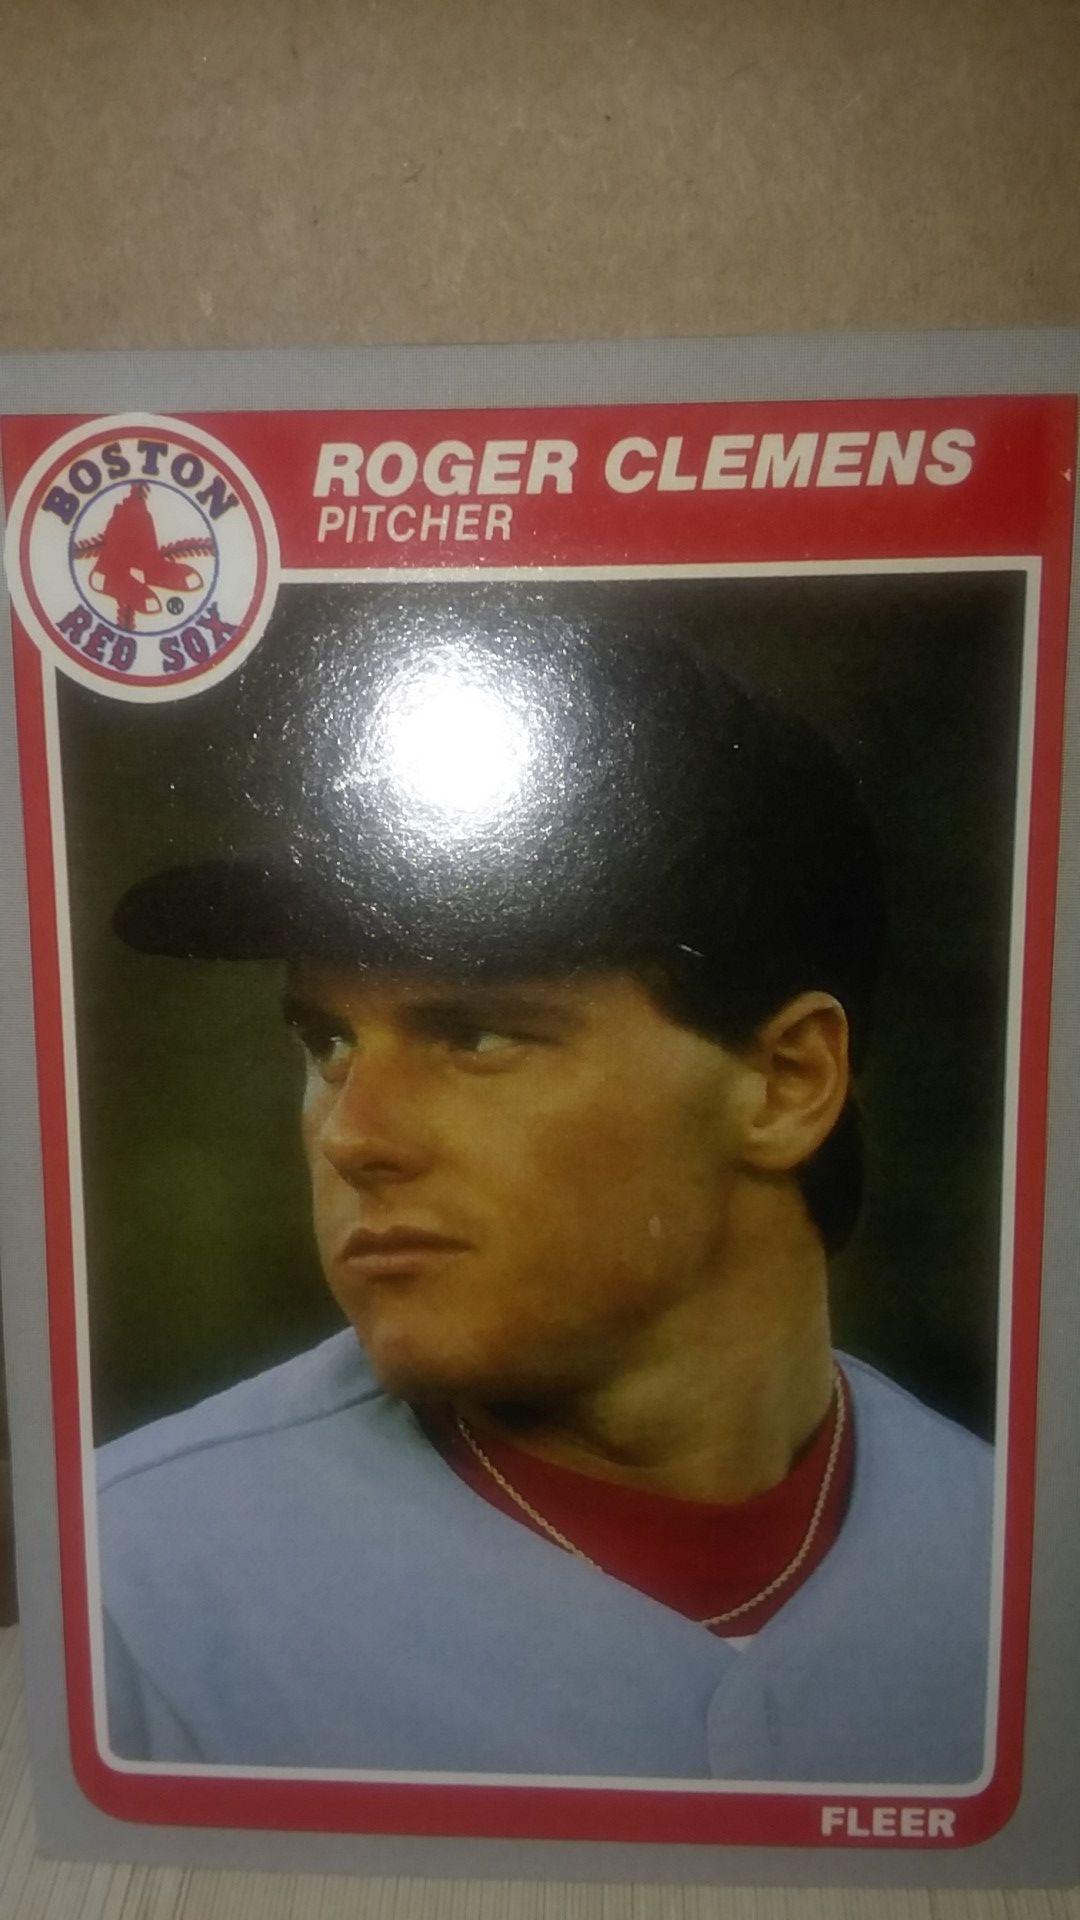 Full Set Of 1985 Fleer Baseball Cards With Roger Clemens Card #155